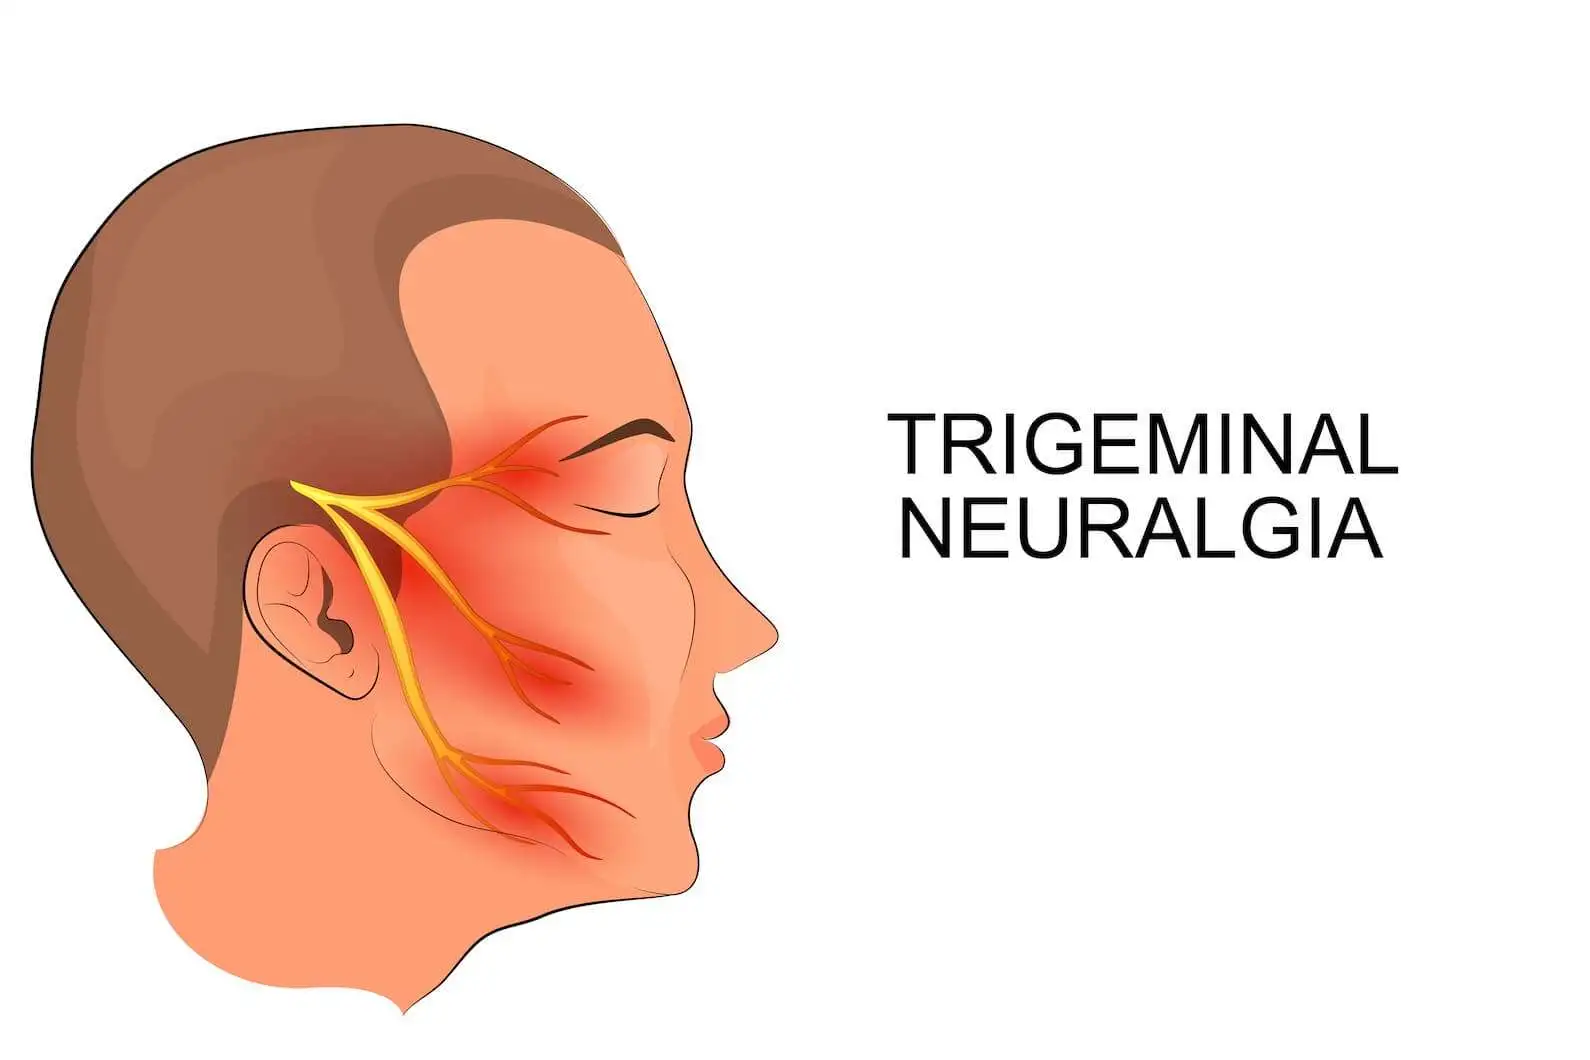 Подкожная нейростимуляция зоны иннервации тройничного нерва при лечении рефрактерной тригеминальной невралгии: когортный анализ